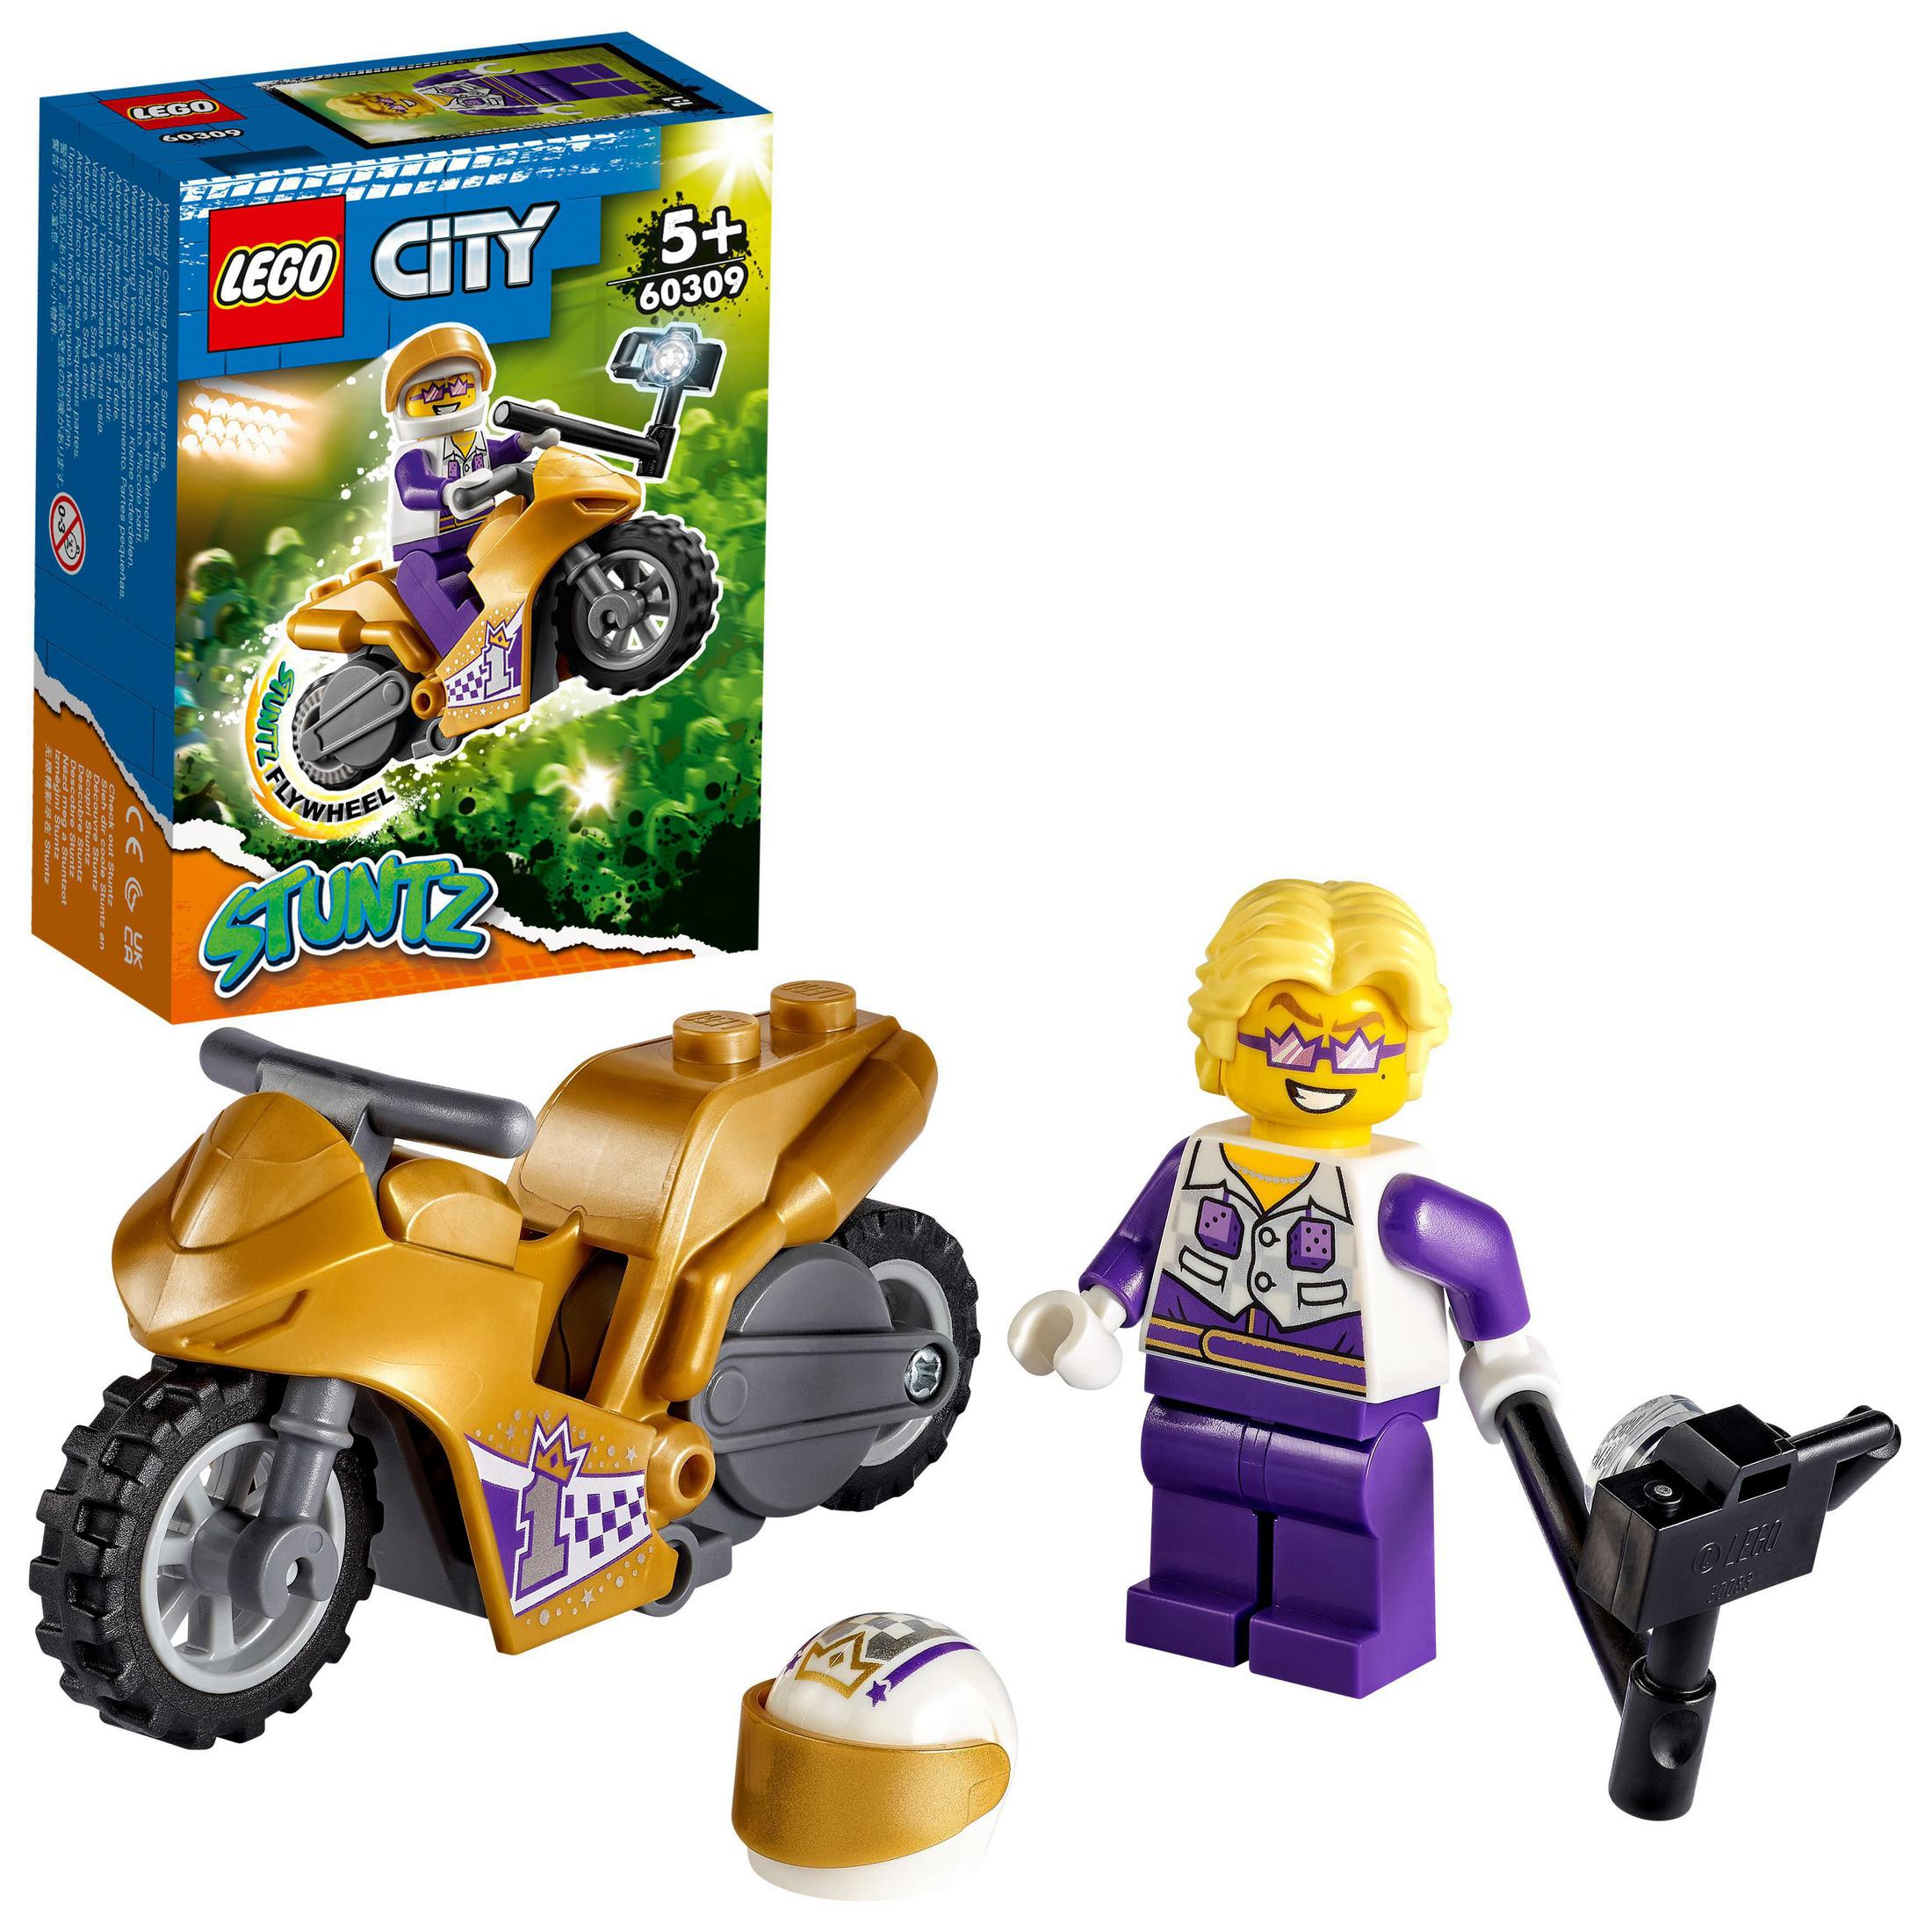 Bike LEGO Angabe Selfie Lego, City LEGO Keine Stunt 60309